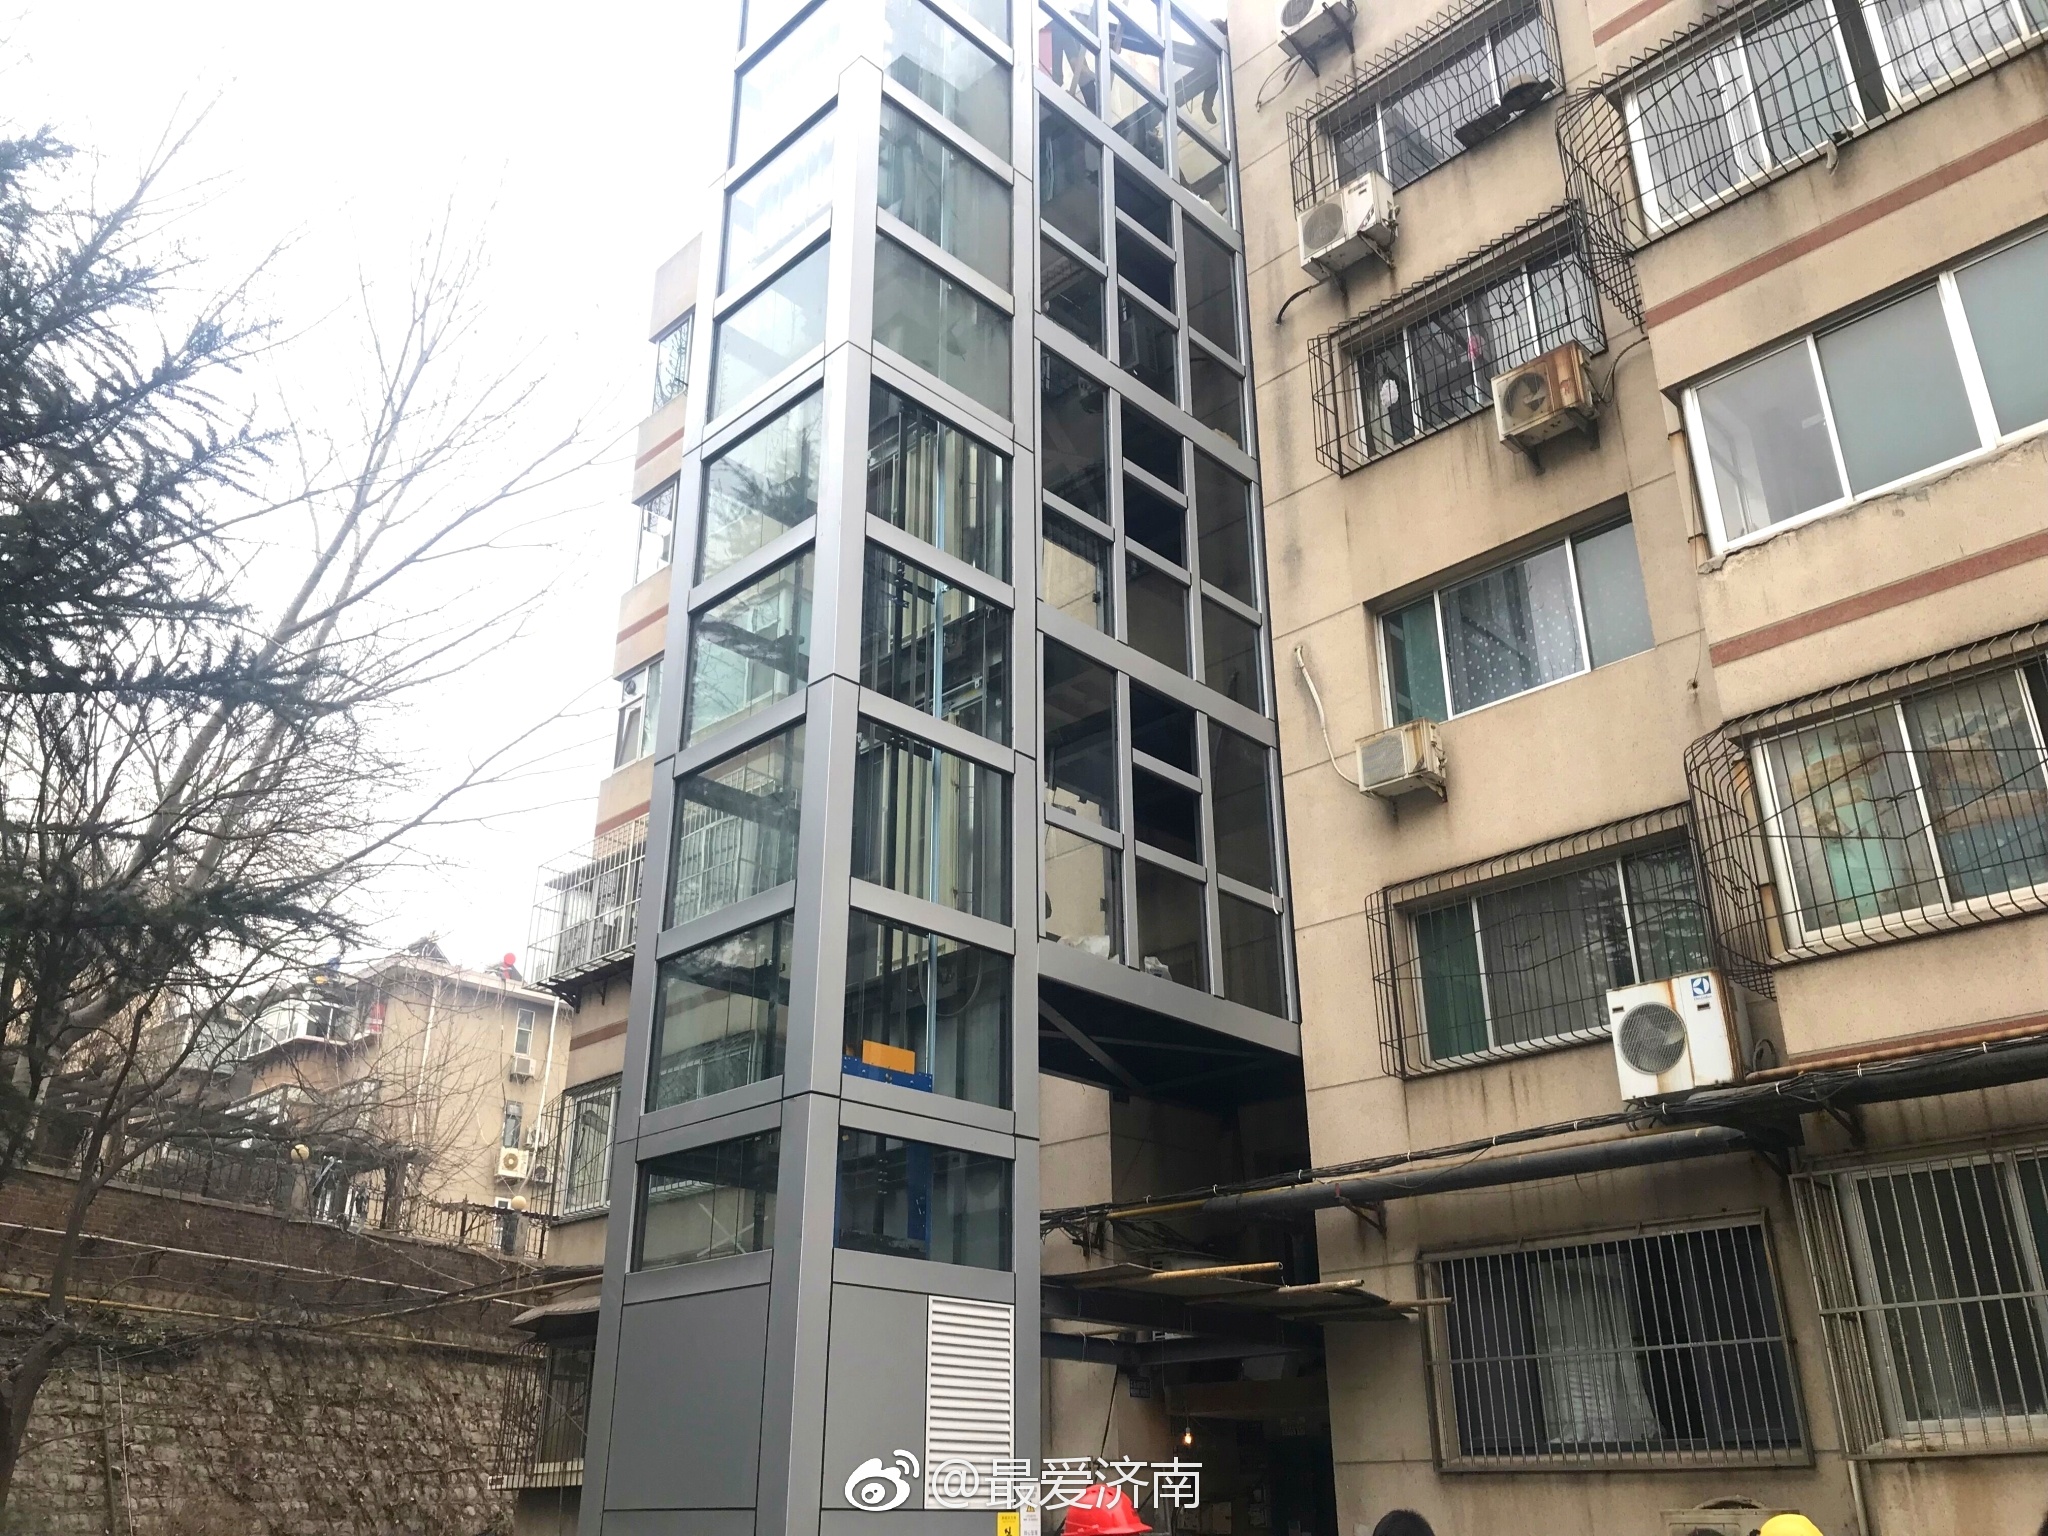 济南首部老楼加装电梯投入使用,上个五楼不到30秒